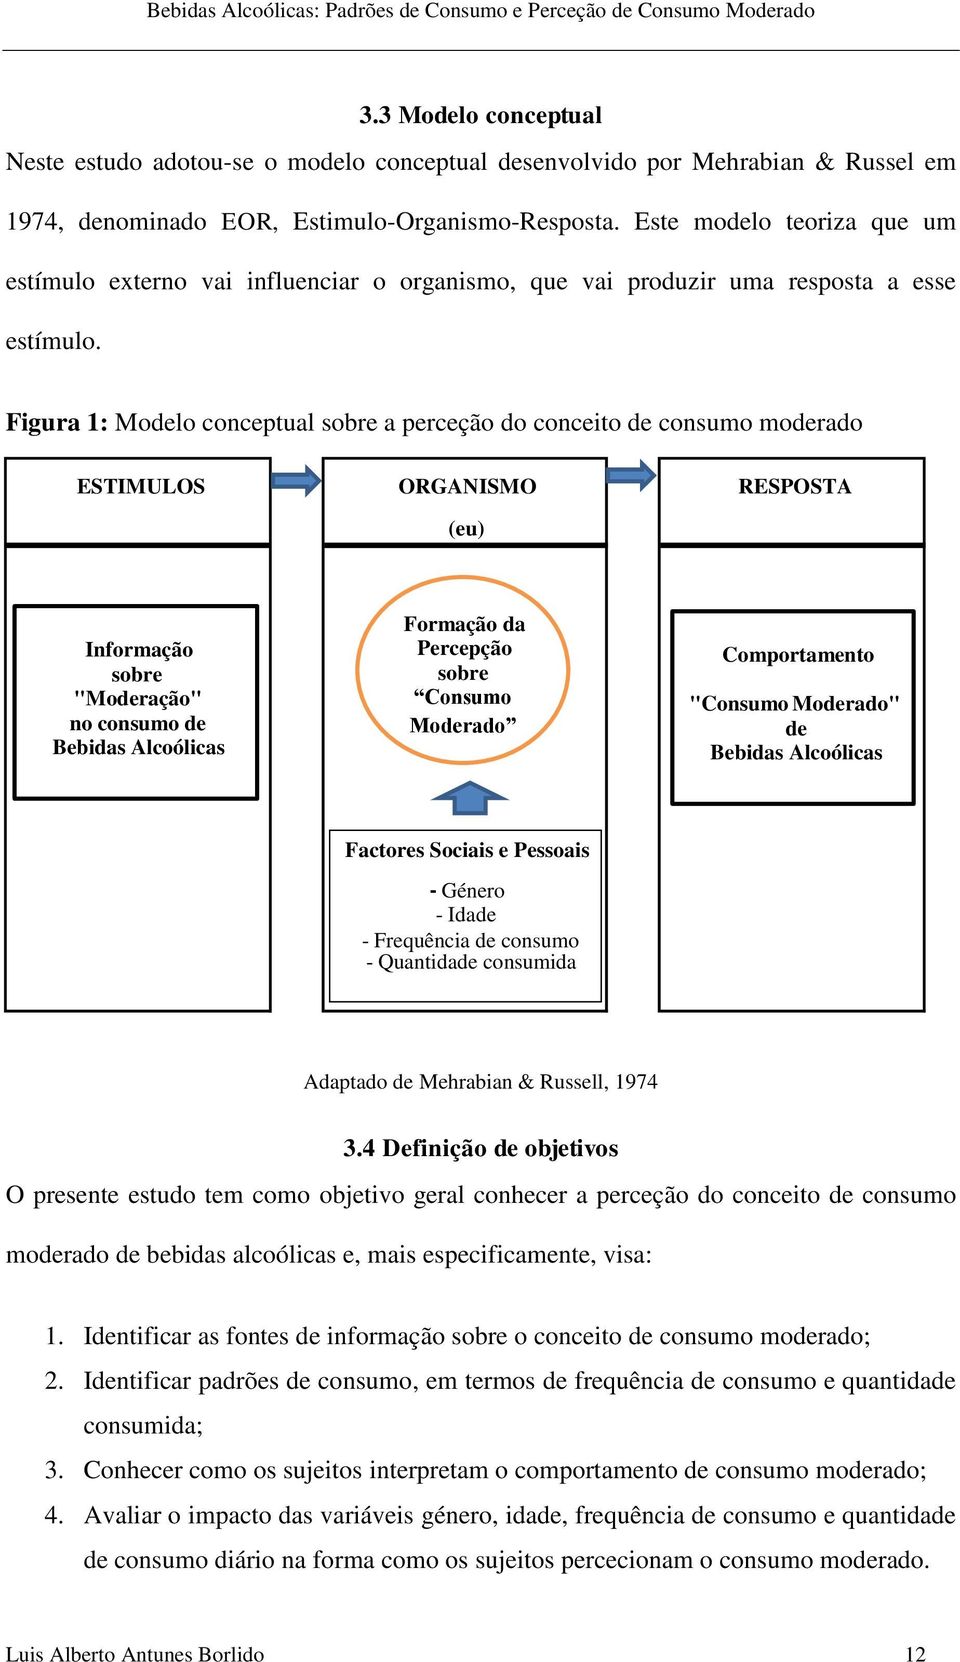 Figura 1: Modelo conceptual sobre a perceção do conceito de consumo moderado ESTIMULOS ORGANISMO RESPOSTA (eu) Informação sobre "Moderação" no consumo de Bebidas Alcoólicas Formação da Percepção